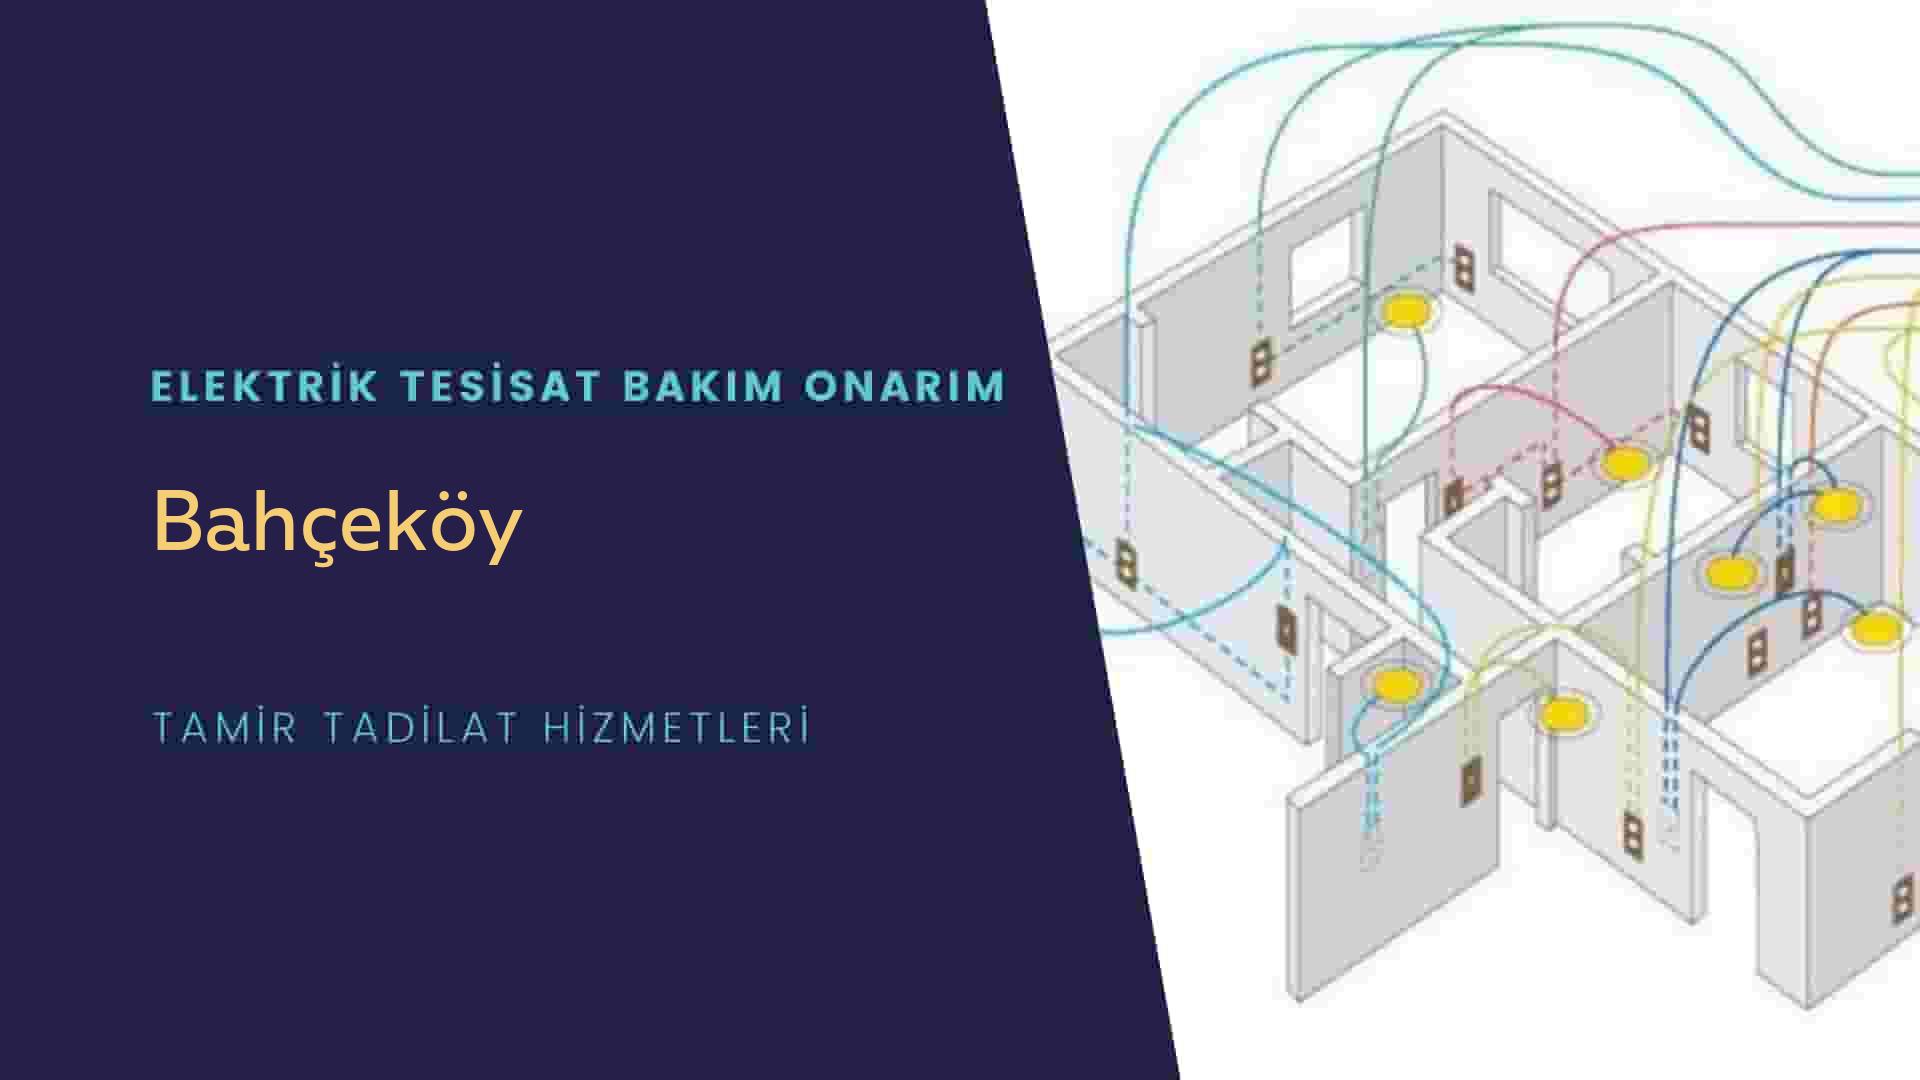 Bahçeköy'de elektrik tesisatı ustalarımı arıyorsunuz doğru adrestenizi Bahçeköy elektrik tesisatı ustalarımız 7/24 sizlere hizmet vermekten mutluluk duyar.